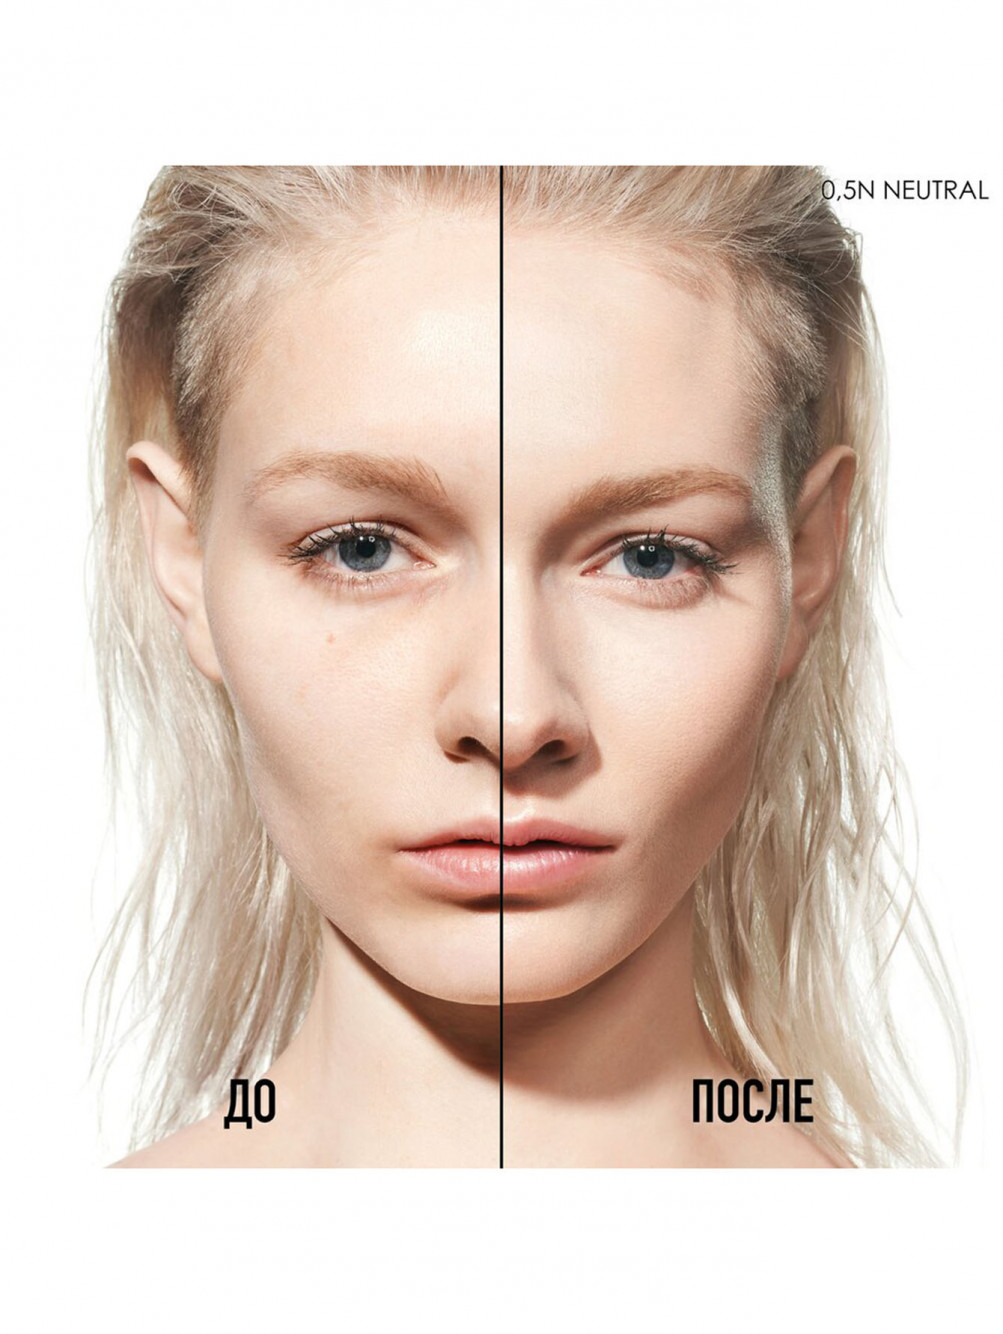 Тональная основа для лица и тела Dior Backstage Face&Body, OW Теплый, 50 мл - Обтравка2